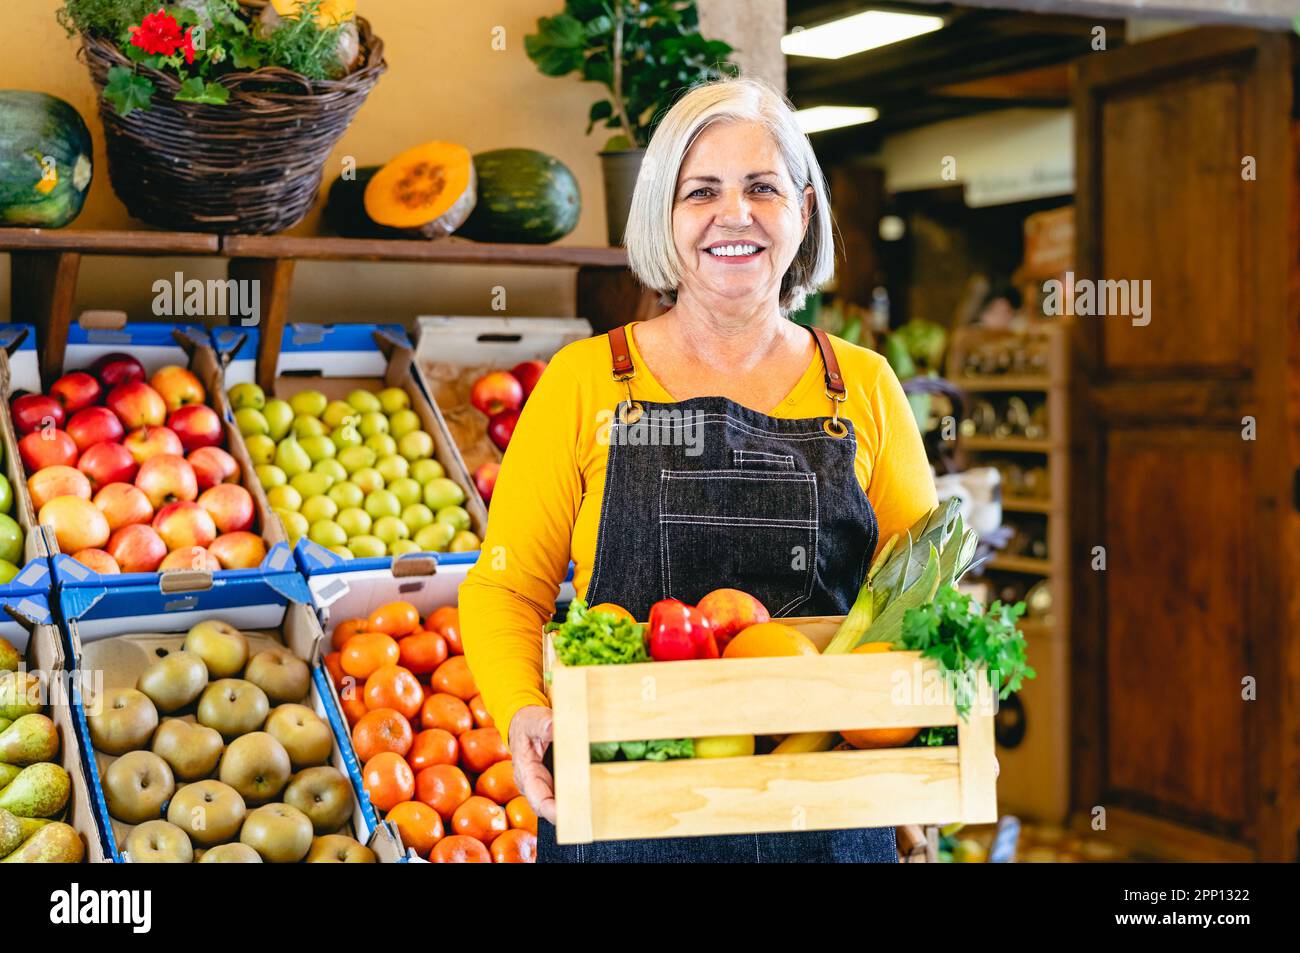 Fruttivendolo femminile che lavora sul mercato con una scatola contenente frutta e verdura fresca - concetto di vendita al dettaglio di alimenti Foto Stock